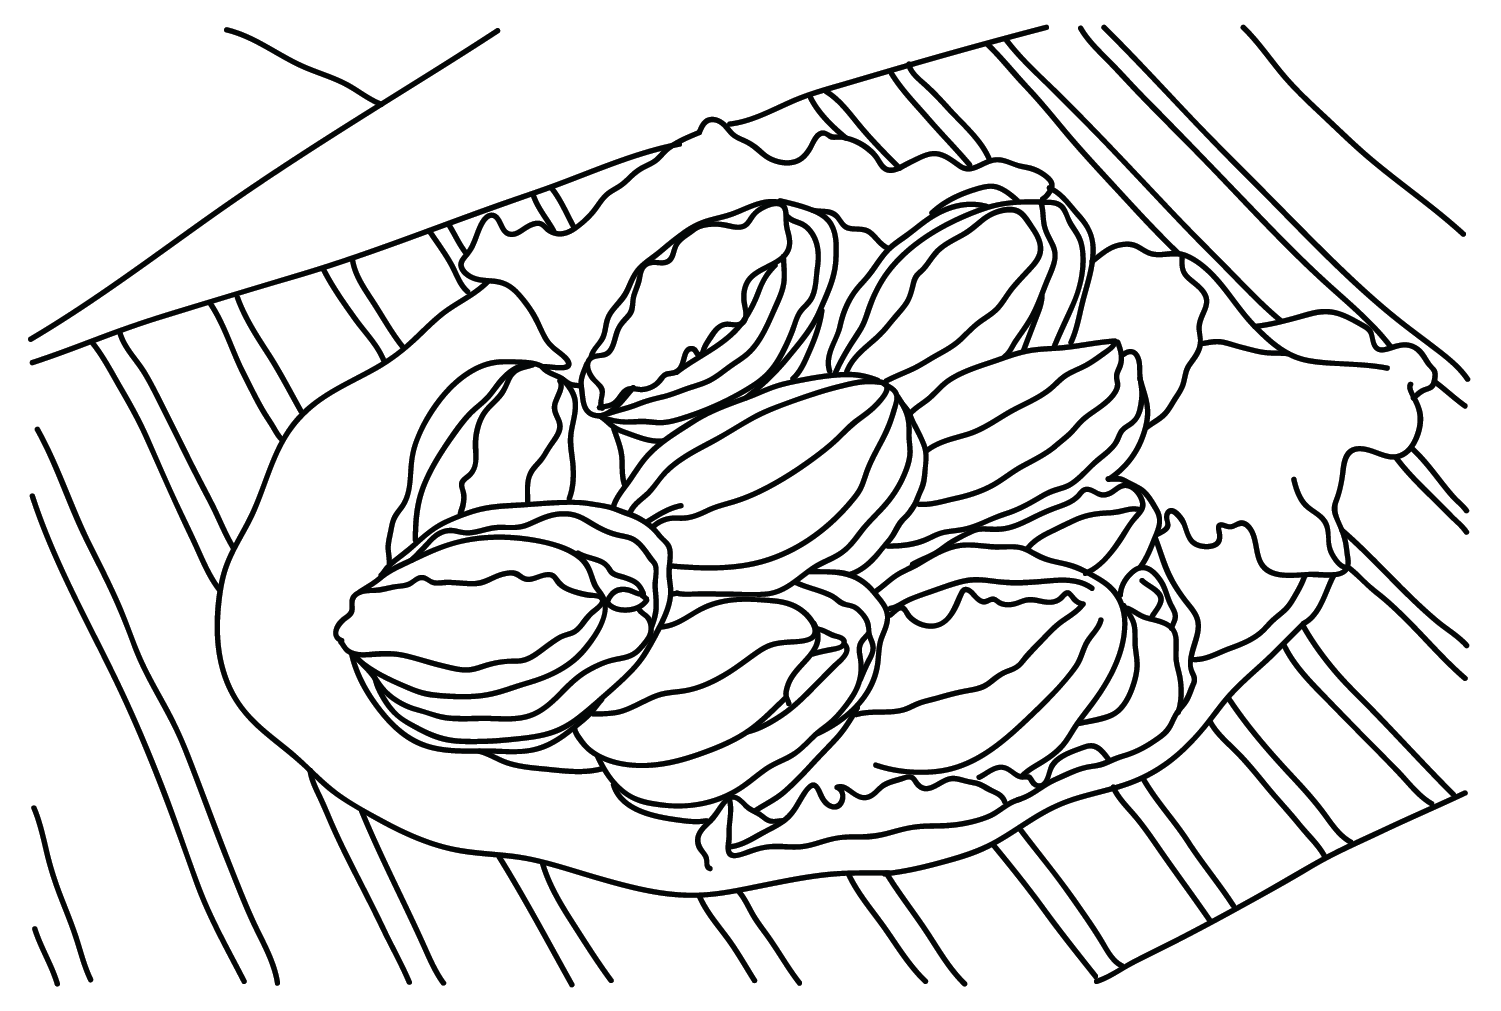 Рисование страницы раскраски морского ушка из морского ушка